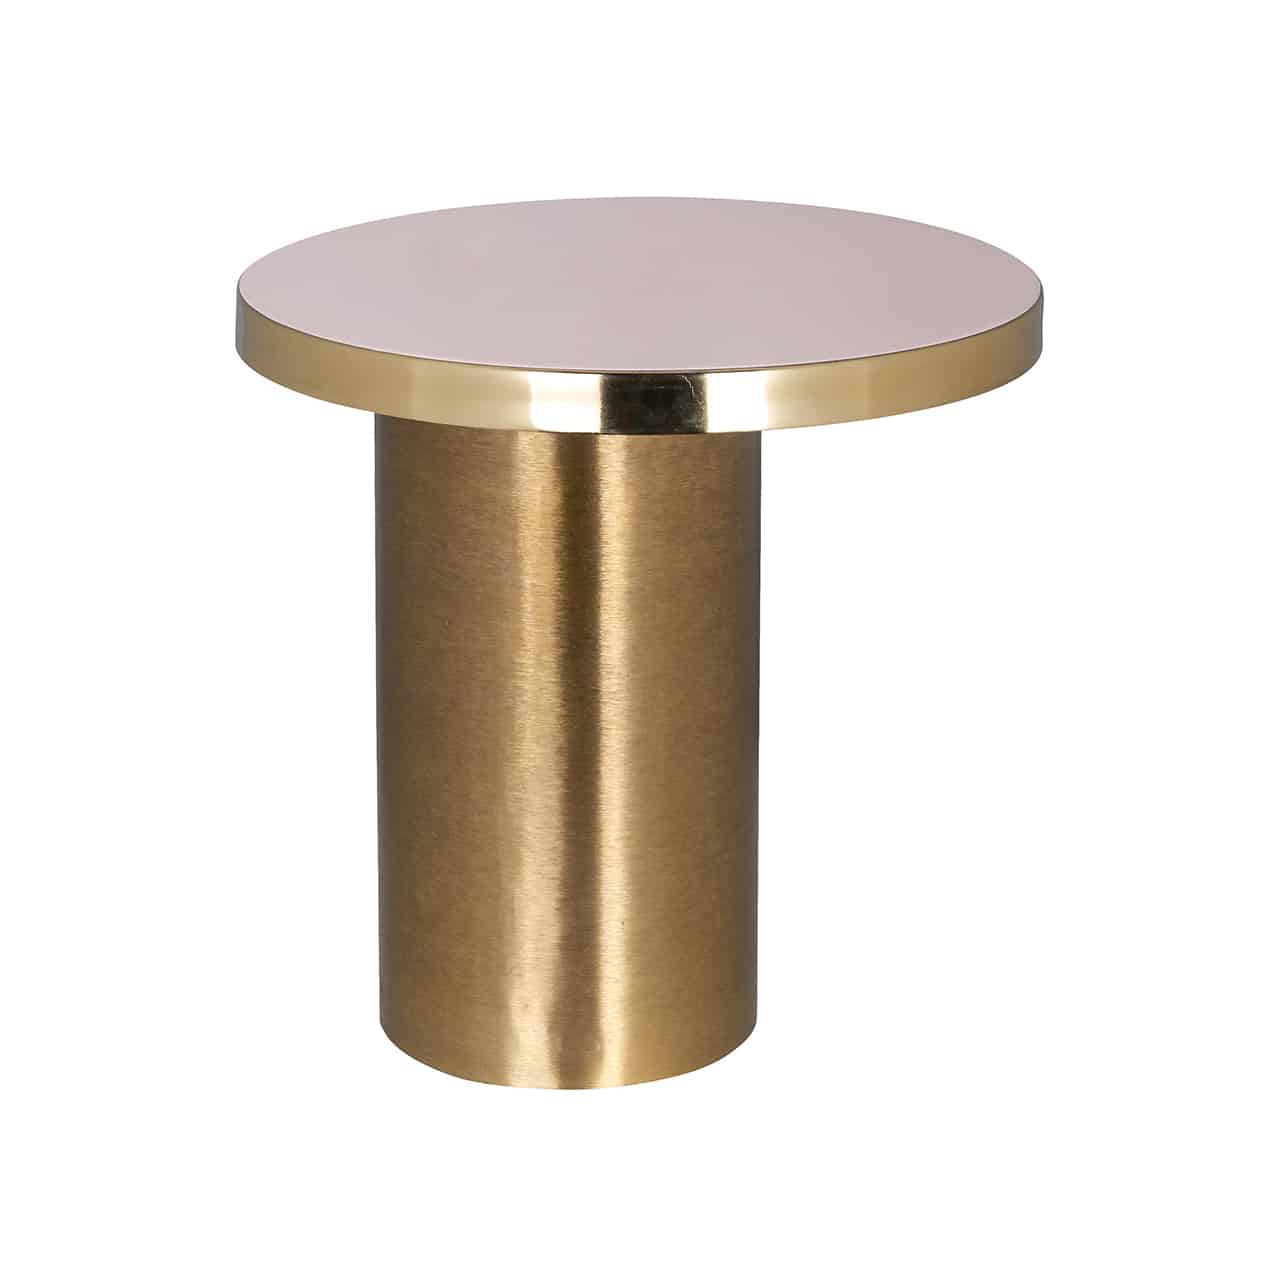 Beistelltisch mit einem zylinderförmigen Fuß aus gebürstetem Gold, darauf  leicht versetzt, eine runde Tischplatte in weiß, eingefasst von einem goldenen Band. 